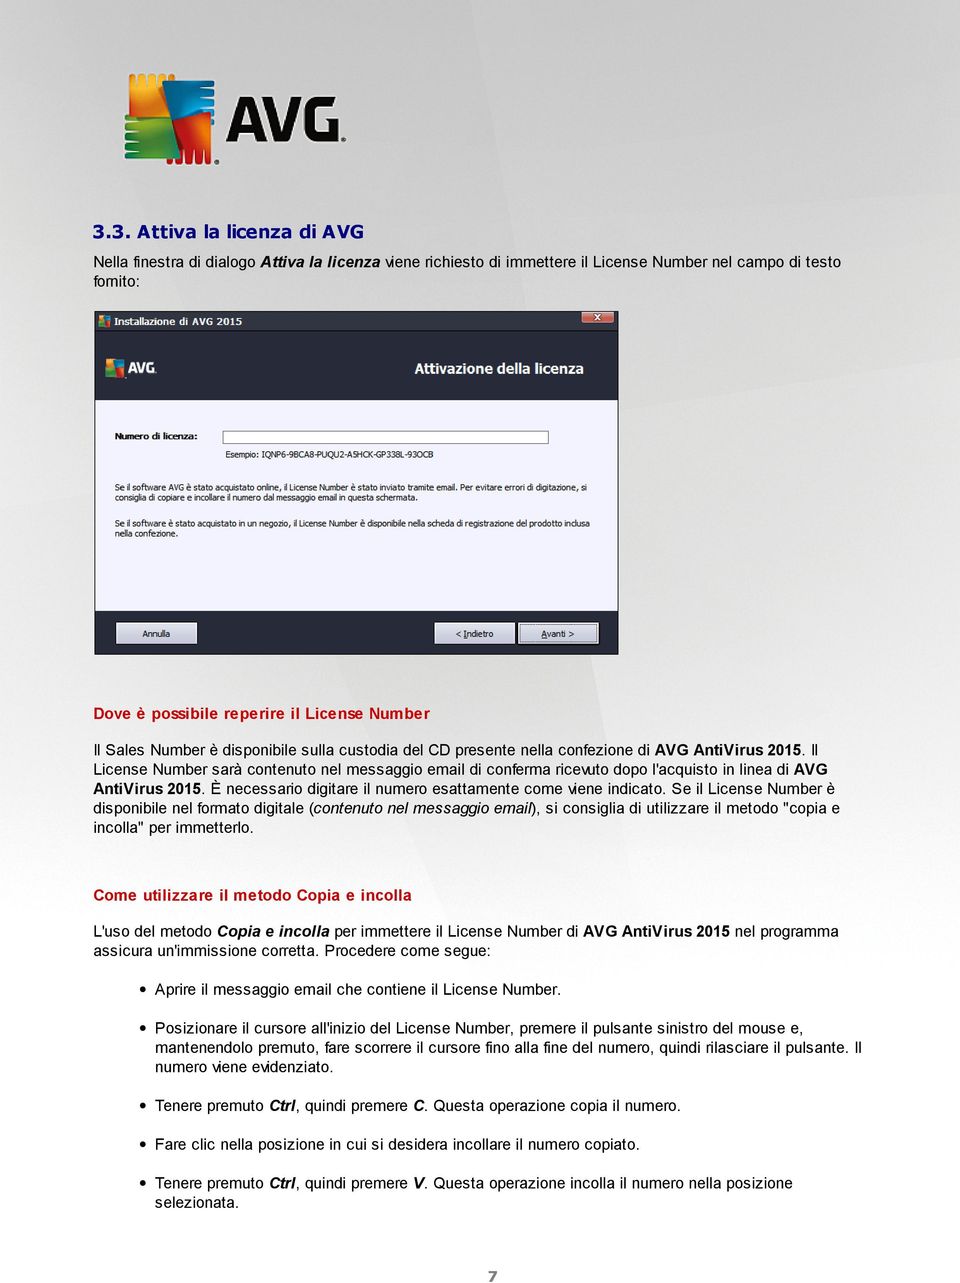 Il License Number sarà contenuto nel messaggio email di conferma ricevuto dopo l'acquisto in linea di AVG AntiVirus 2015. È necessario digitare il numero esattamente come viene indicato.